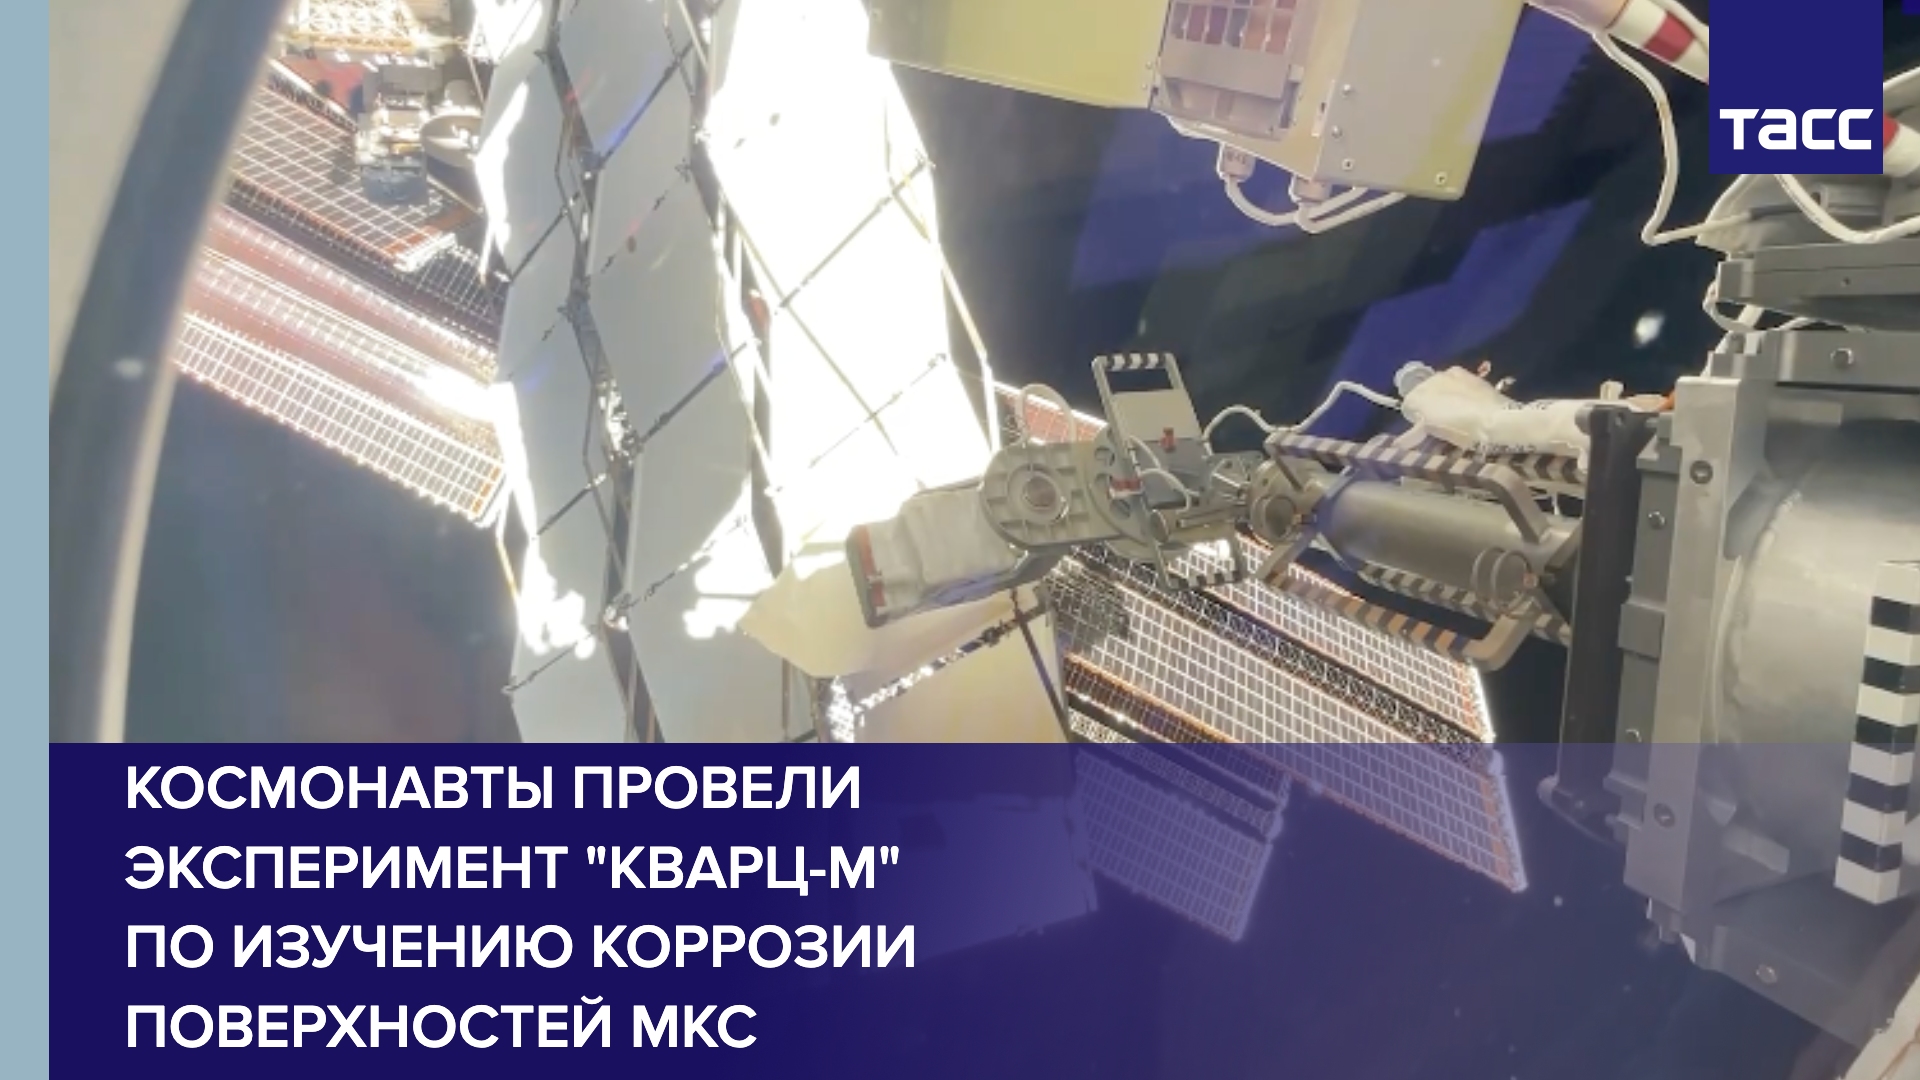 Космонавты провели эксперимент "Кварц-М" по изучению коррозии поверхностей МКС